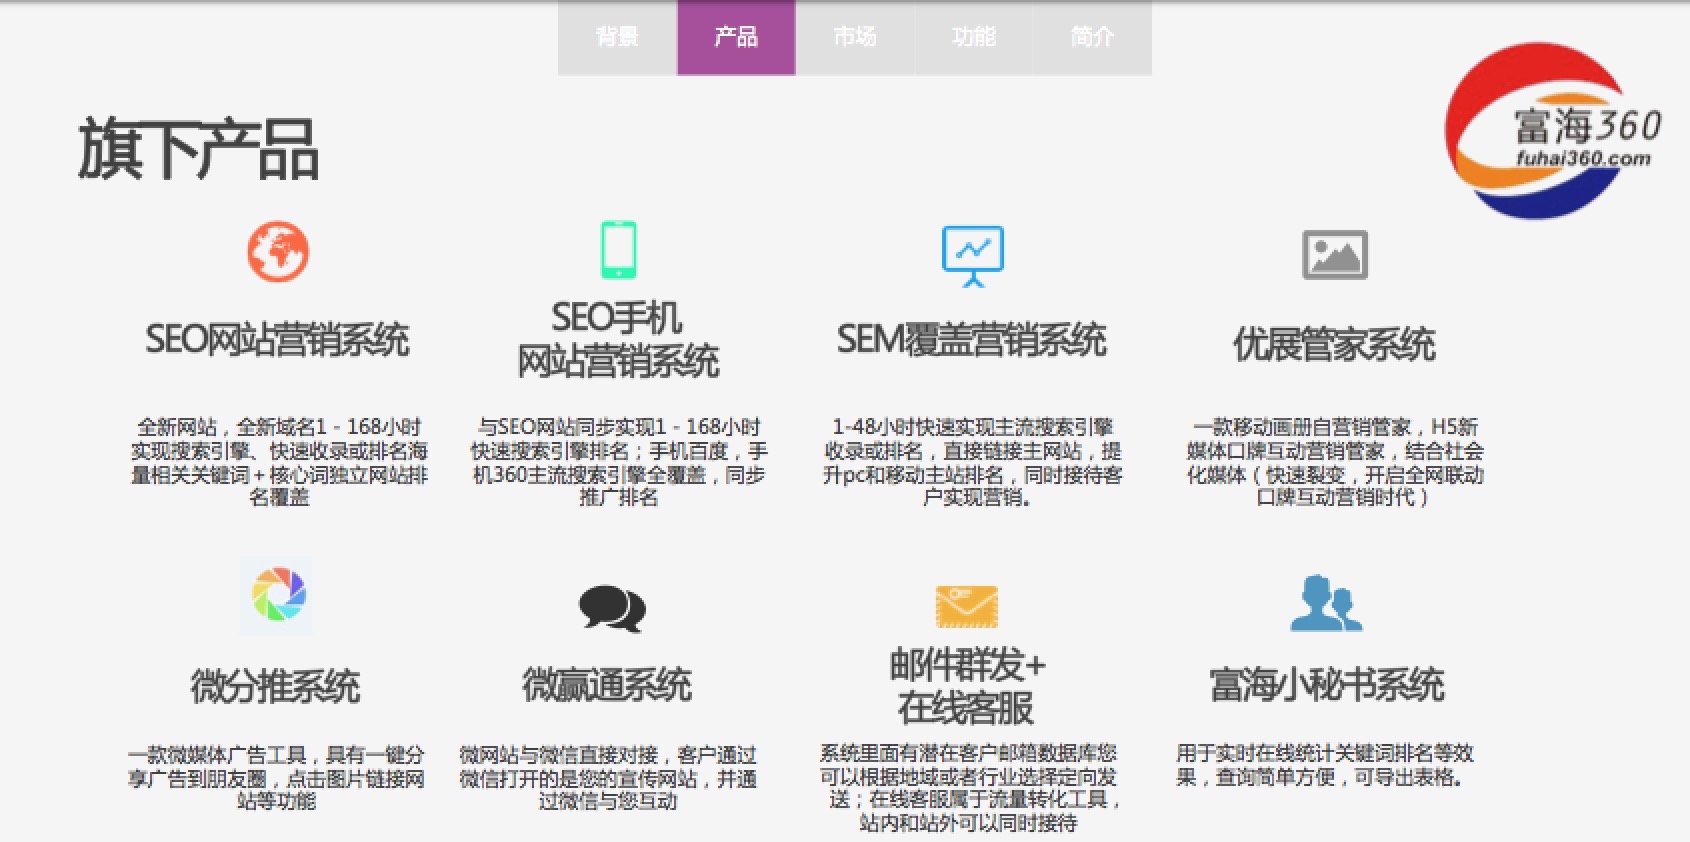 关于陕西网站建设知识框架图的信息